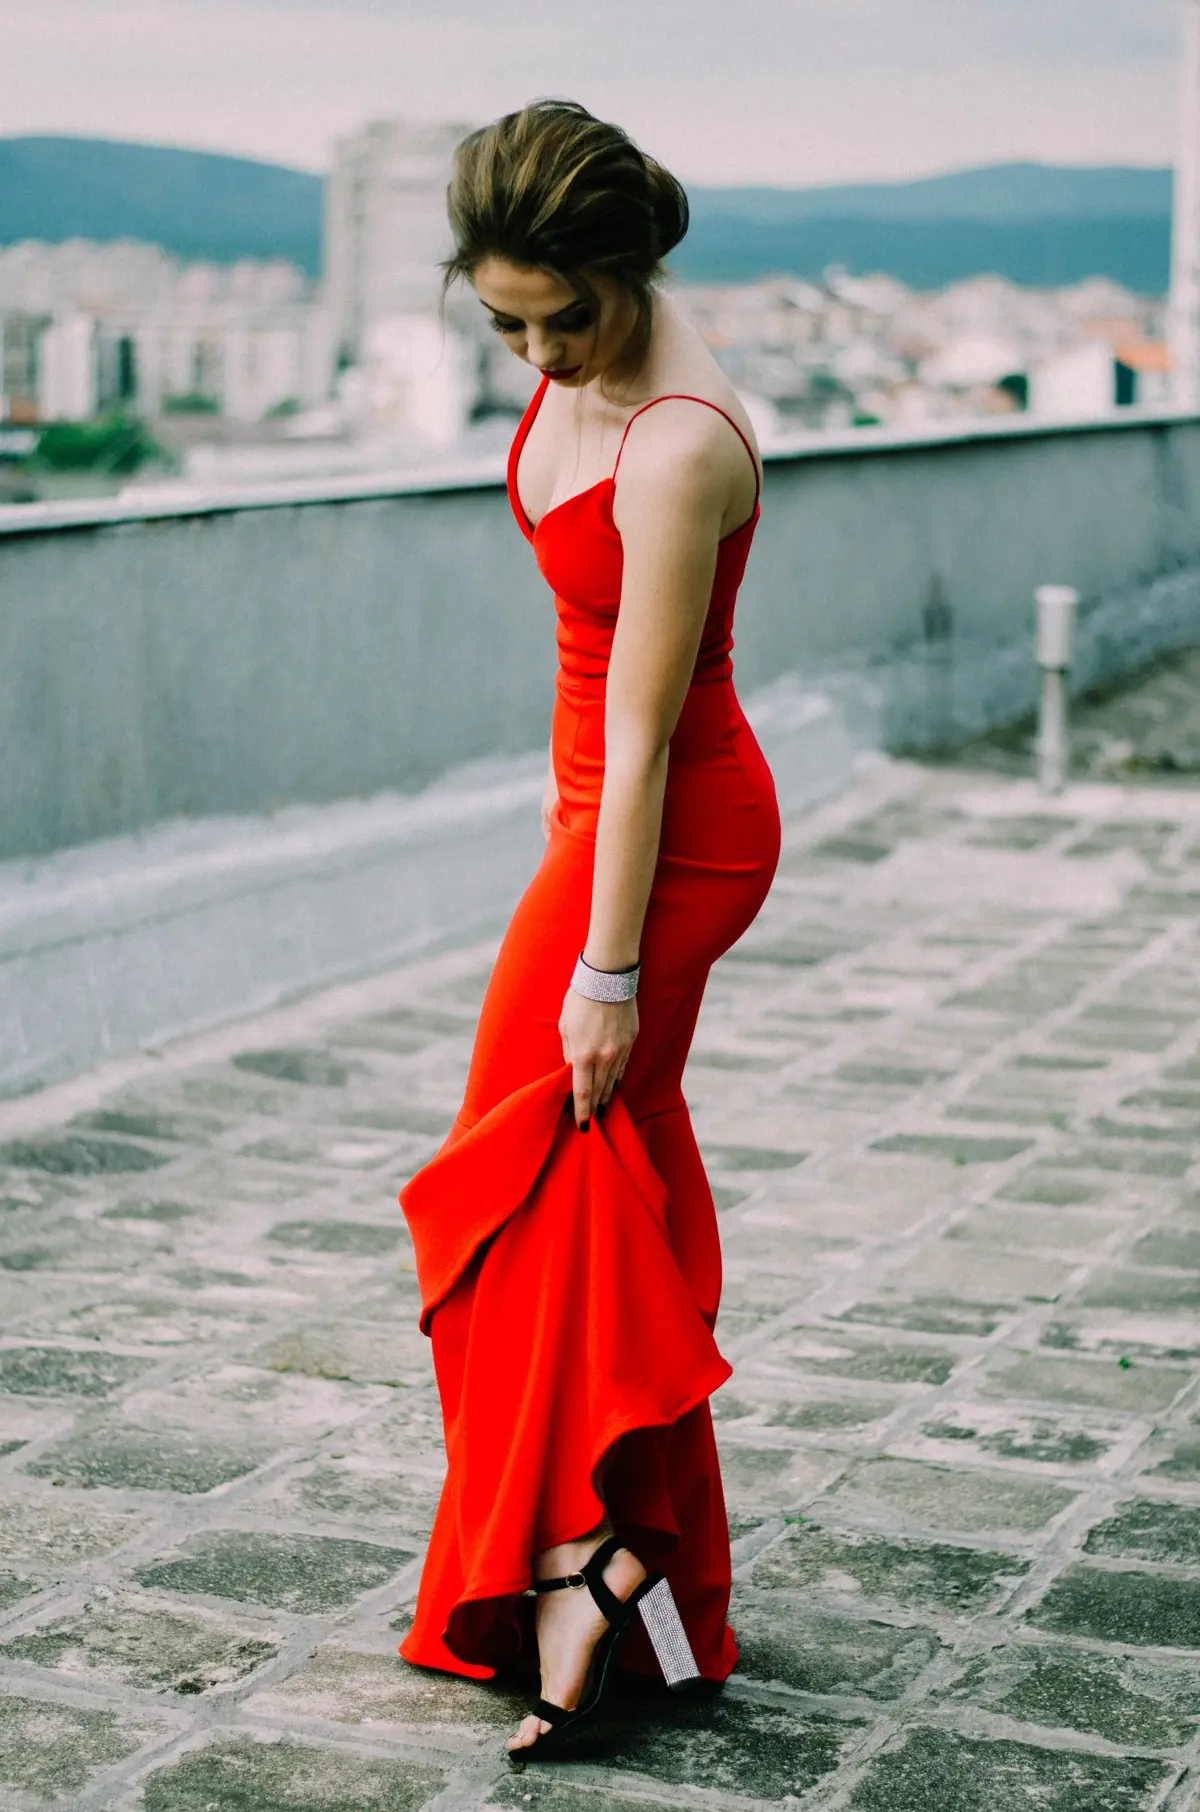 Piękna kobieta z włosami w kok prezentuje nogę w wysokim czarnym obcasie ubrana w czerwoną sukienkę wieczorową